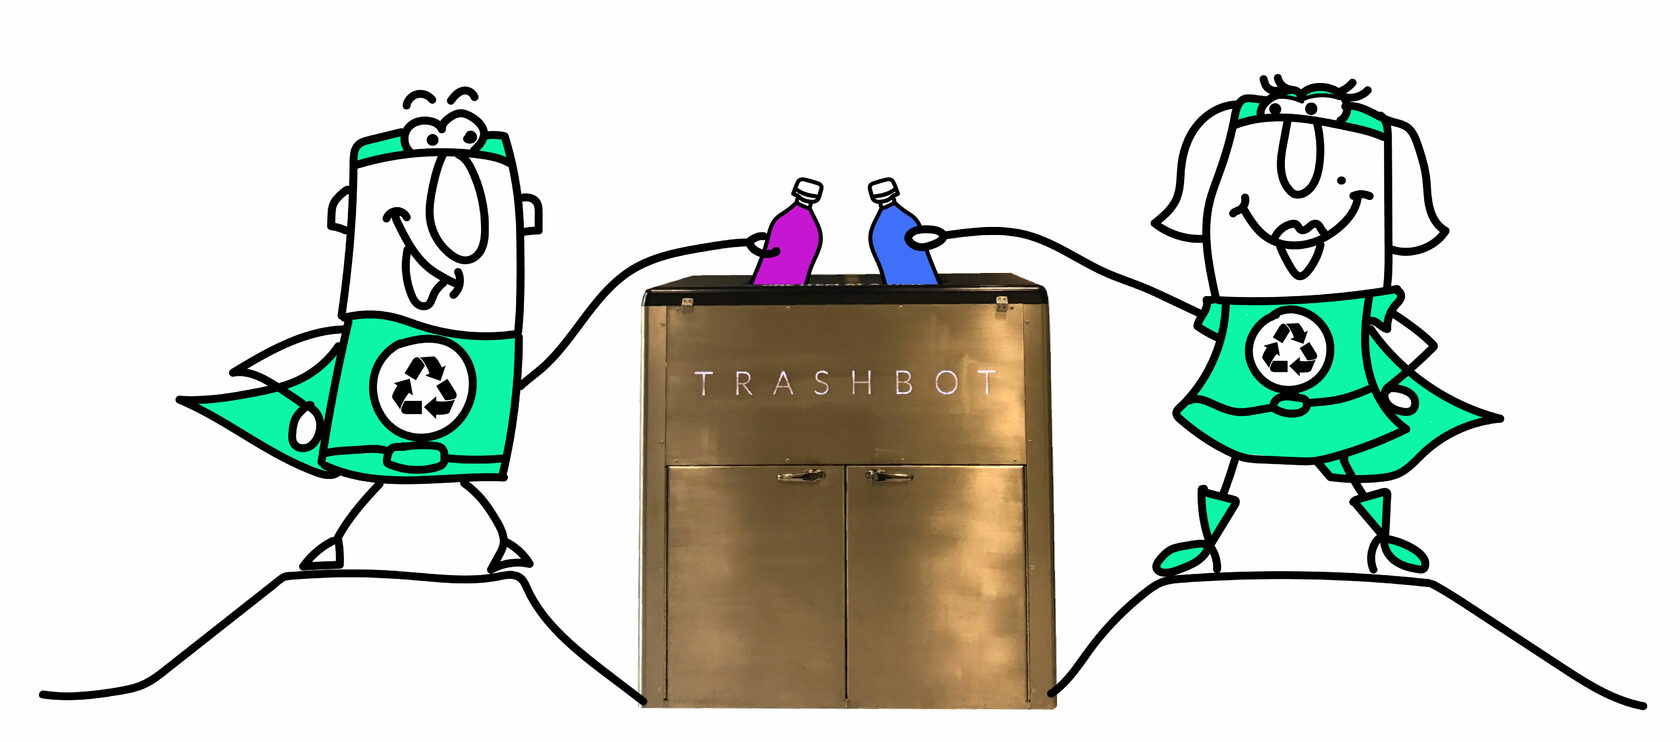 Trashbot для сортировки отходов. Источник изображения: Зелёный